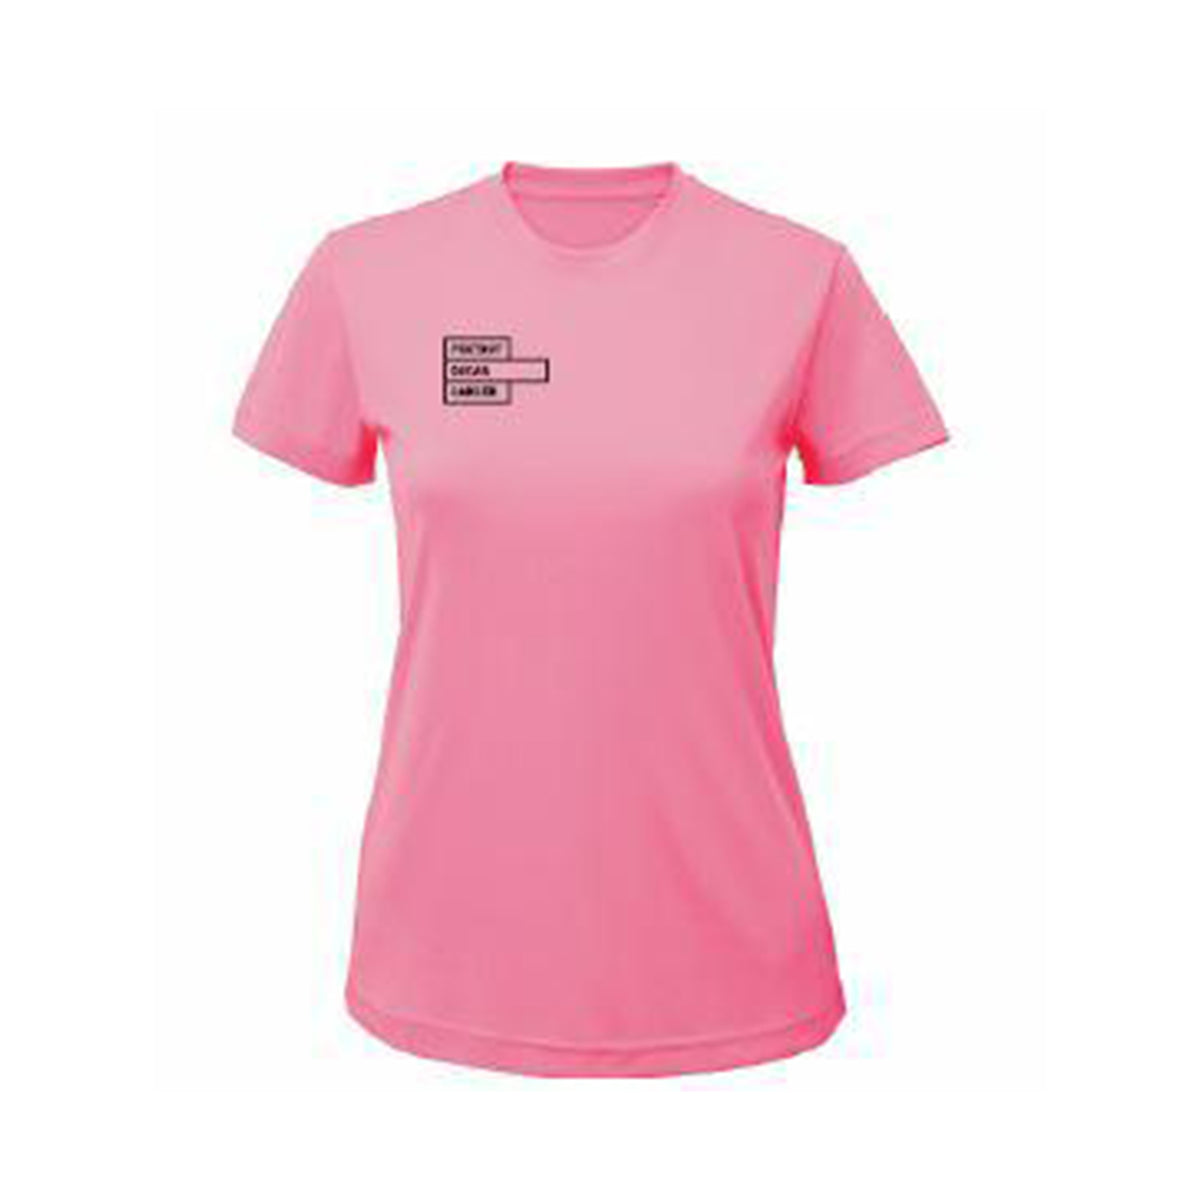 Foxtrot Oscar Womens Gym Shirt: Lightning Pink